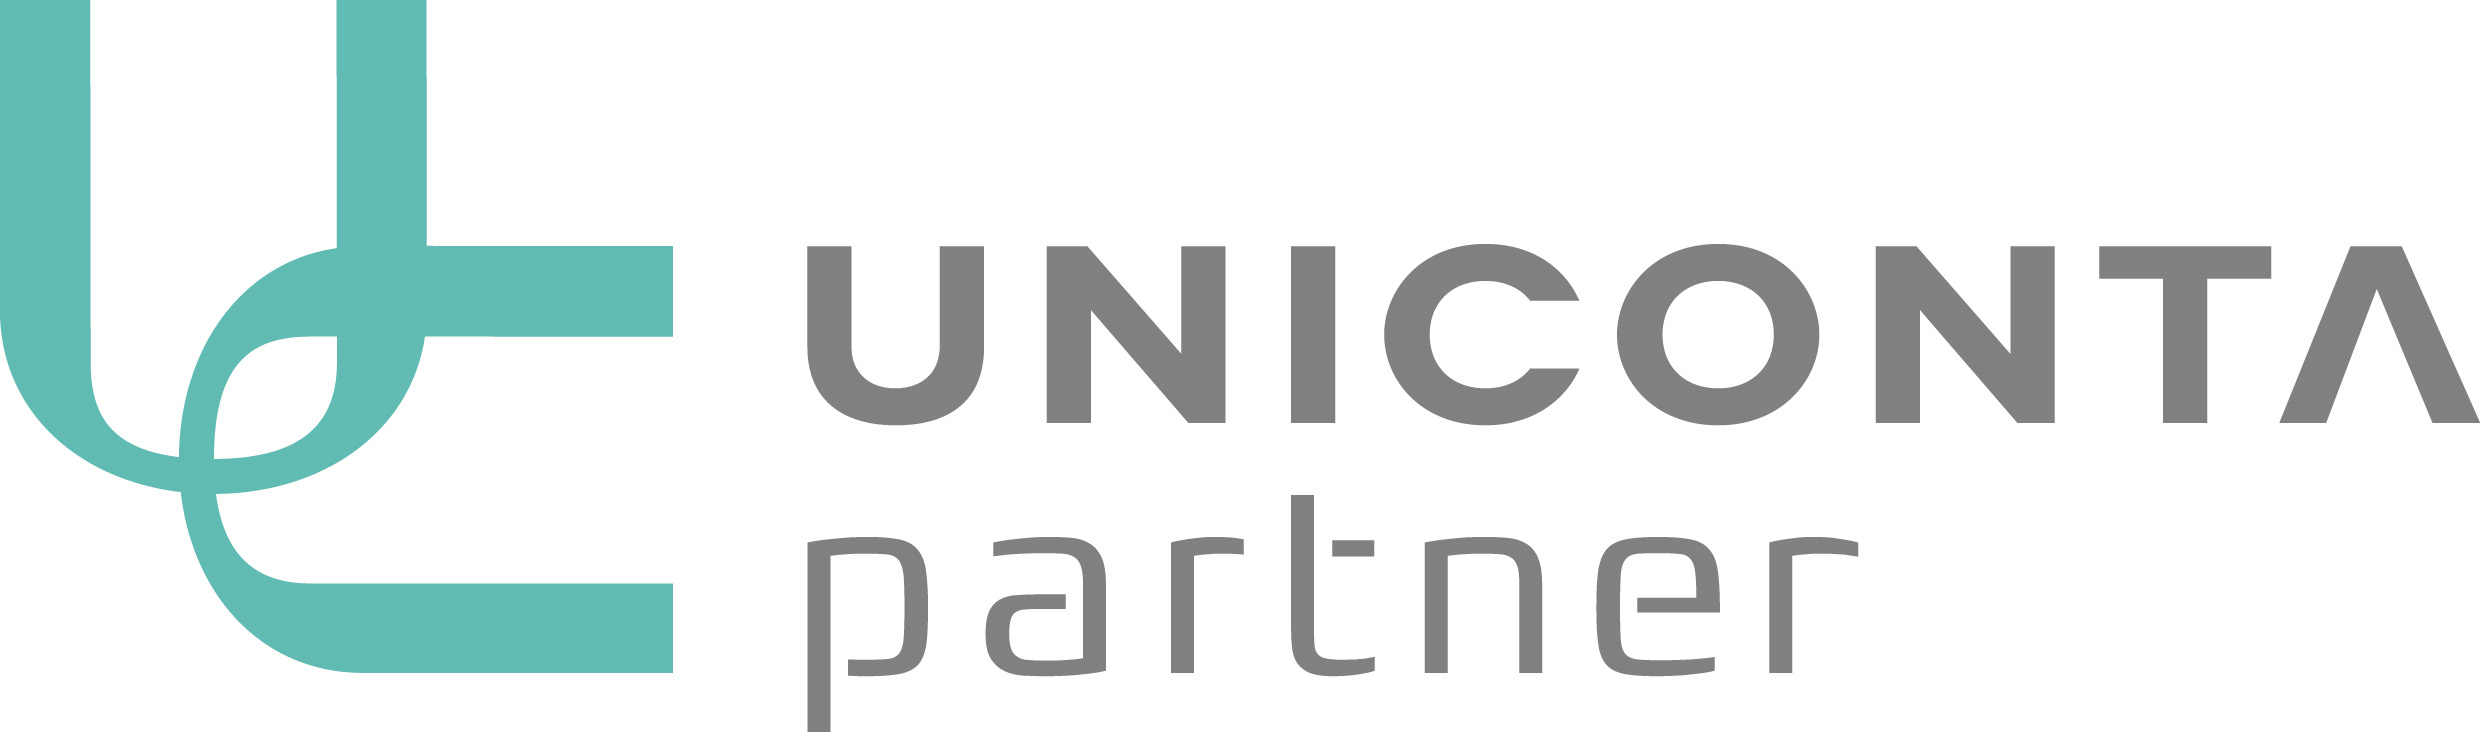 Uniconta Partner